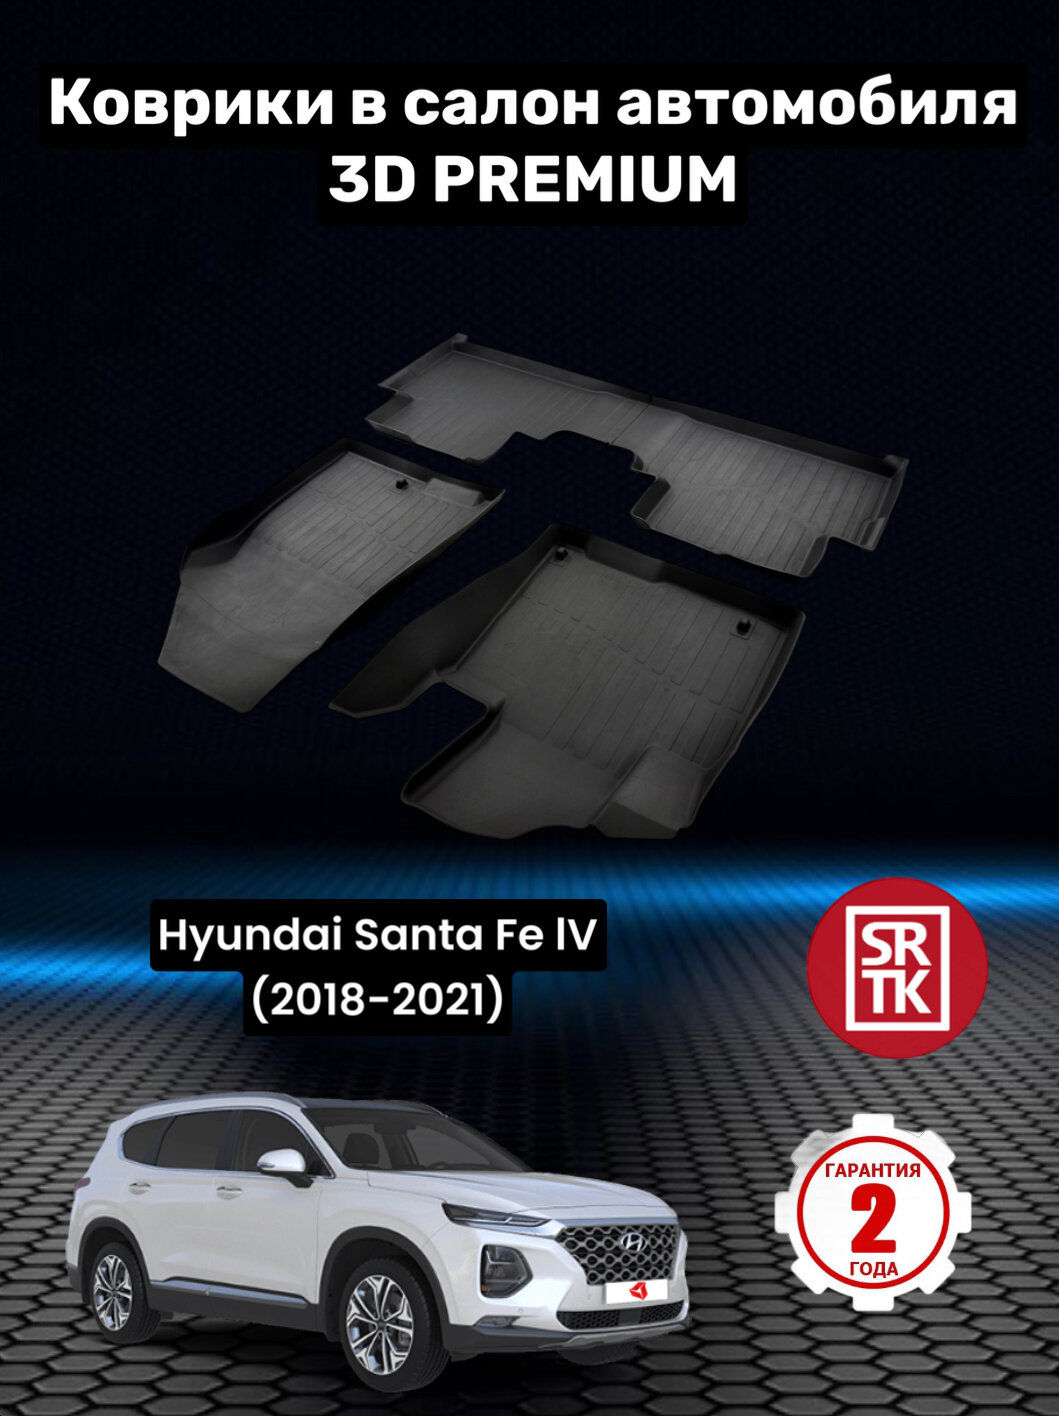 Коврики резиновые Хендай Санта Фе 4/Hyundai Santa Fe IV (2018-2021) 3D PREMIUM SRTK (Саранск) комплект в салон